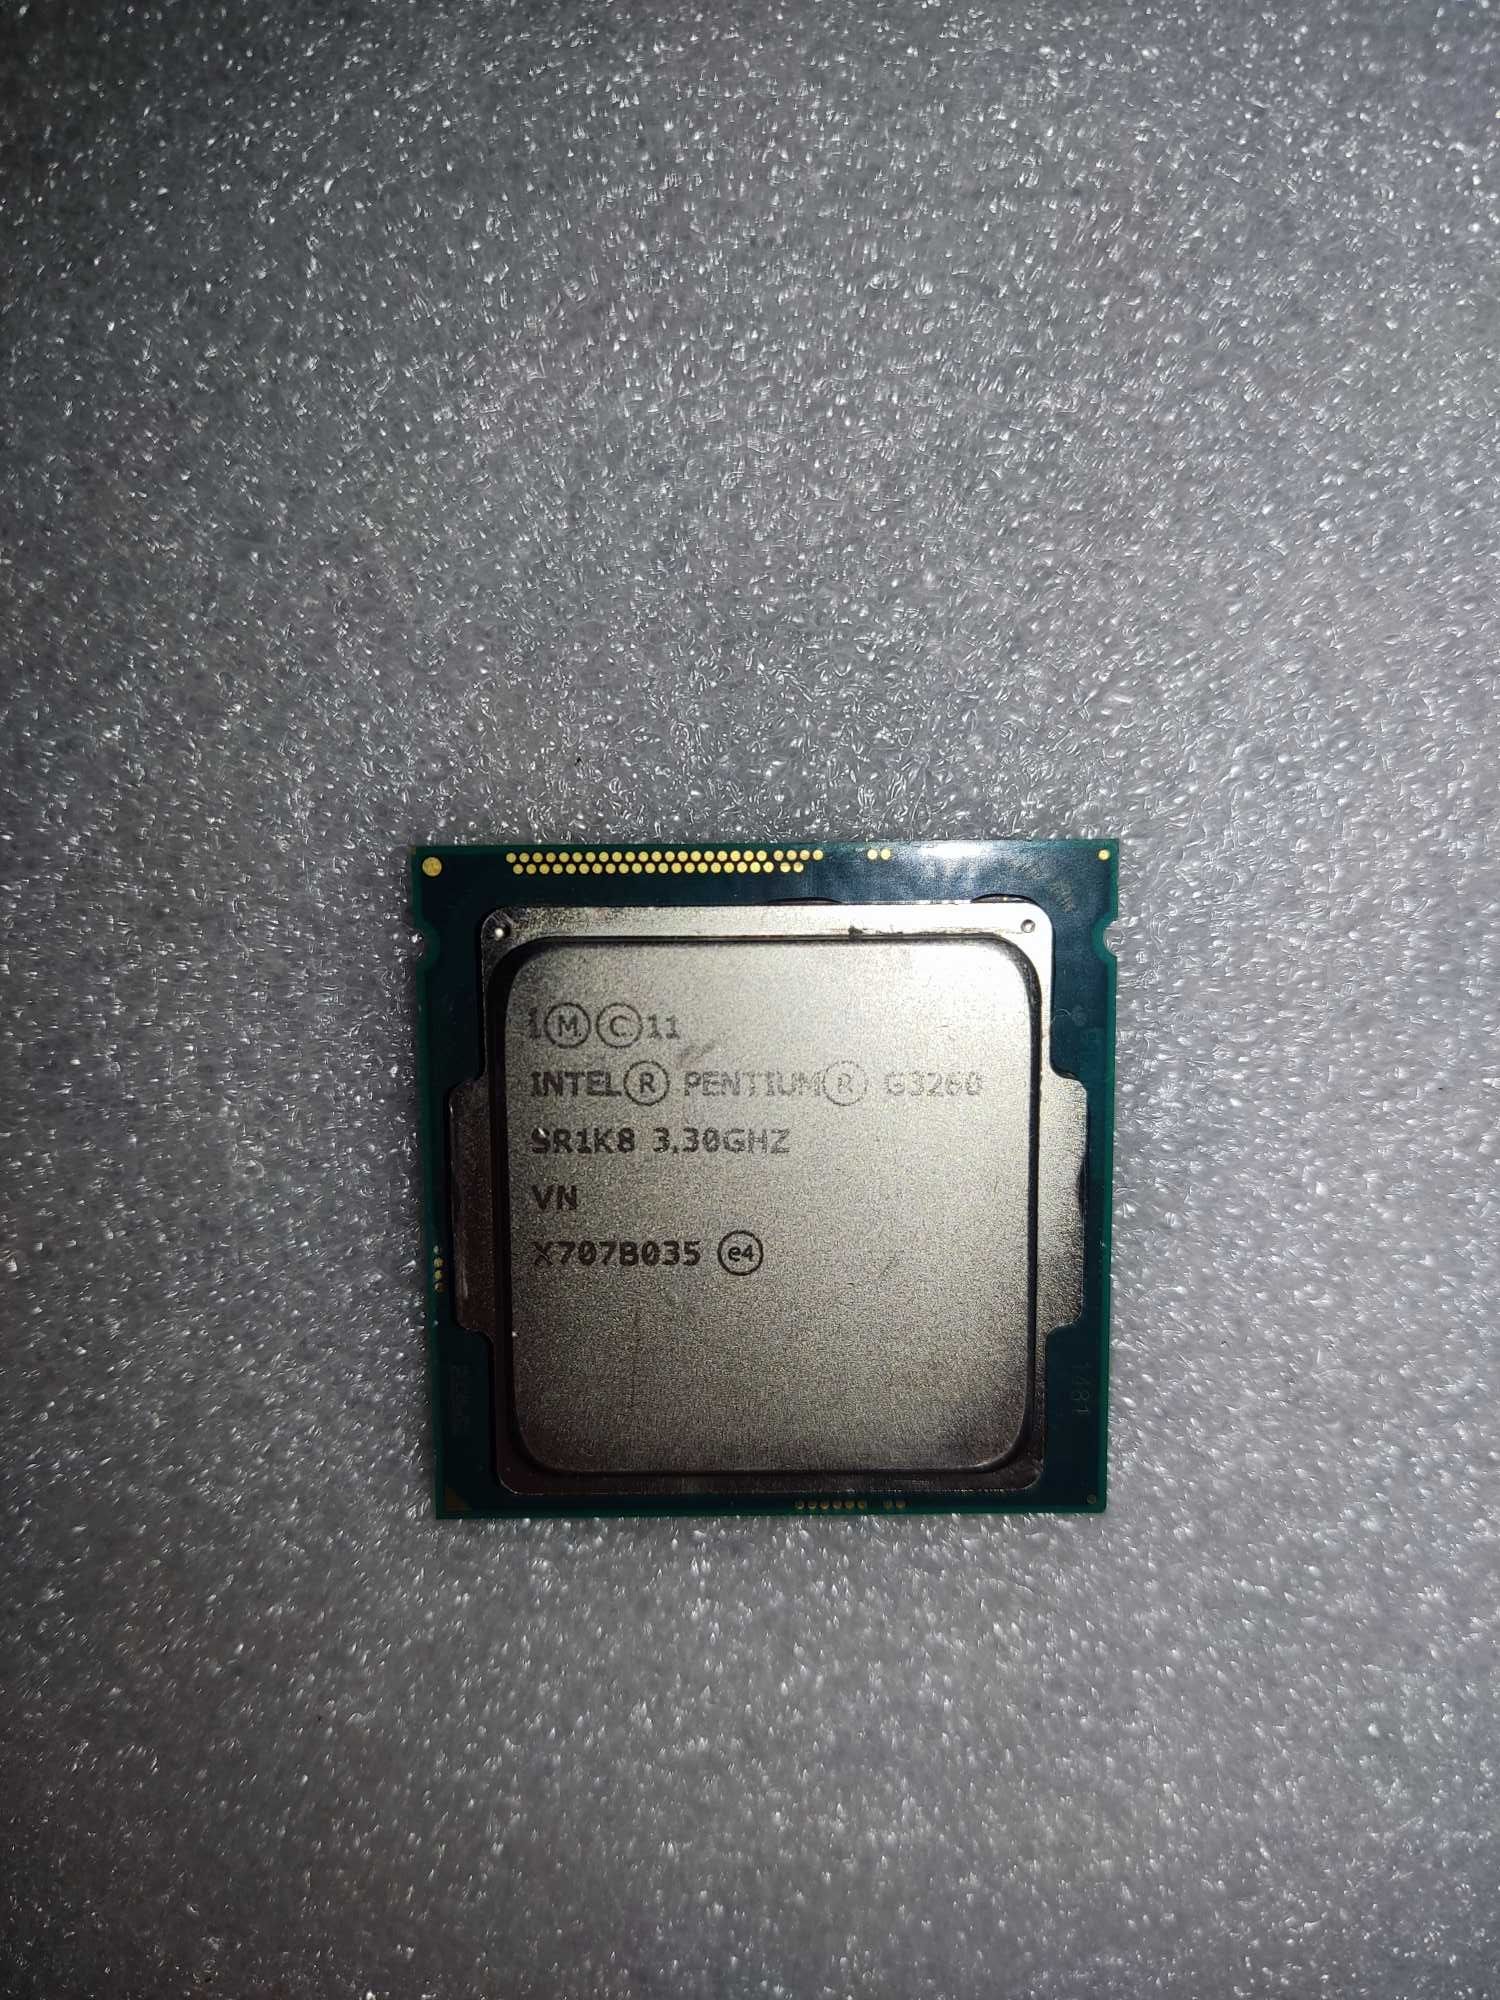 Материнская LGA1150 GA-H81M-S1 + процессор Pentium G3260. Есть глюк